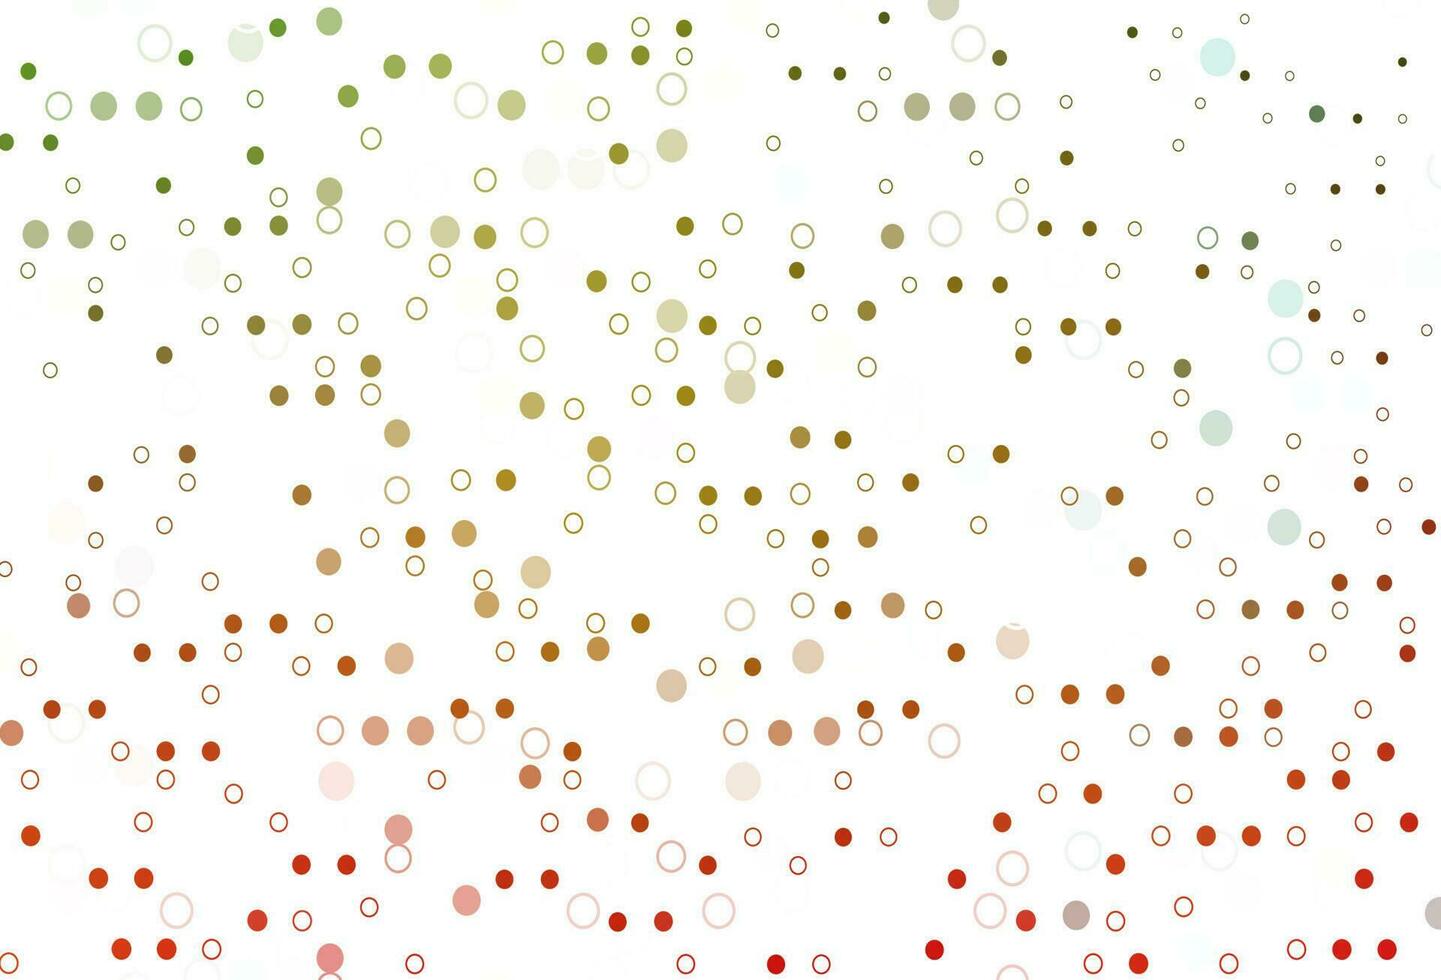 padrão de vetor verde e vermelho claro com esferas.